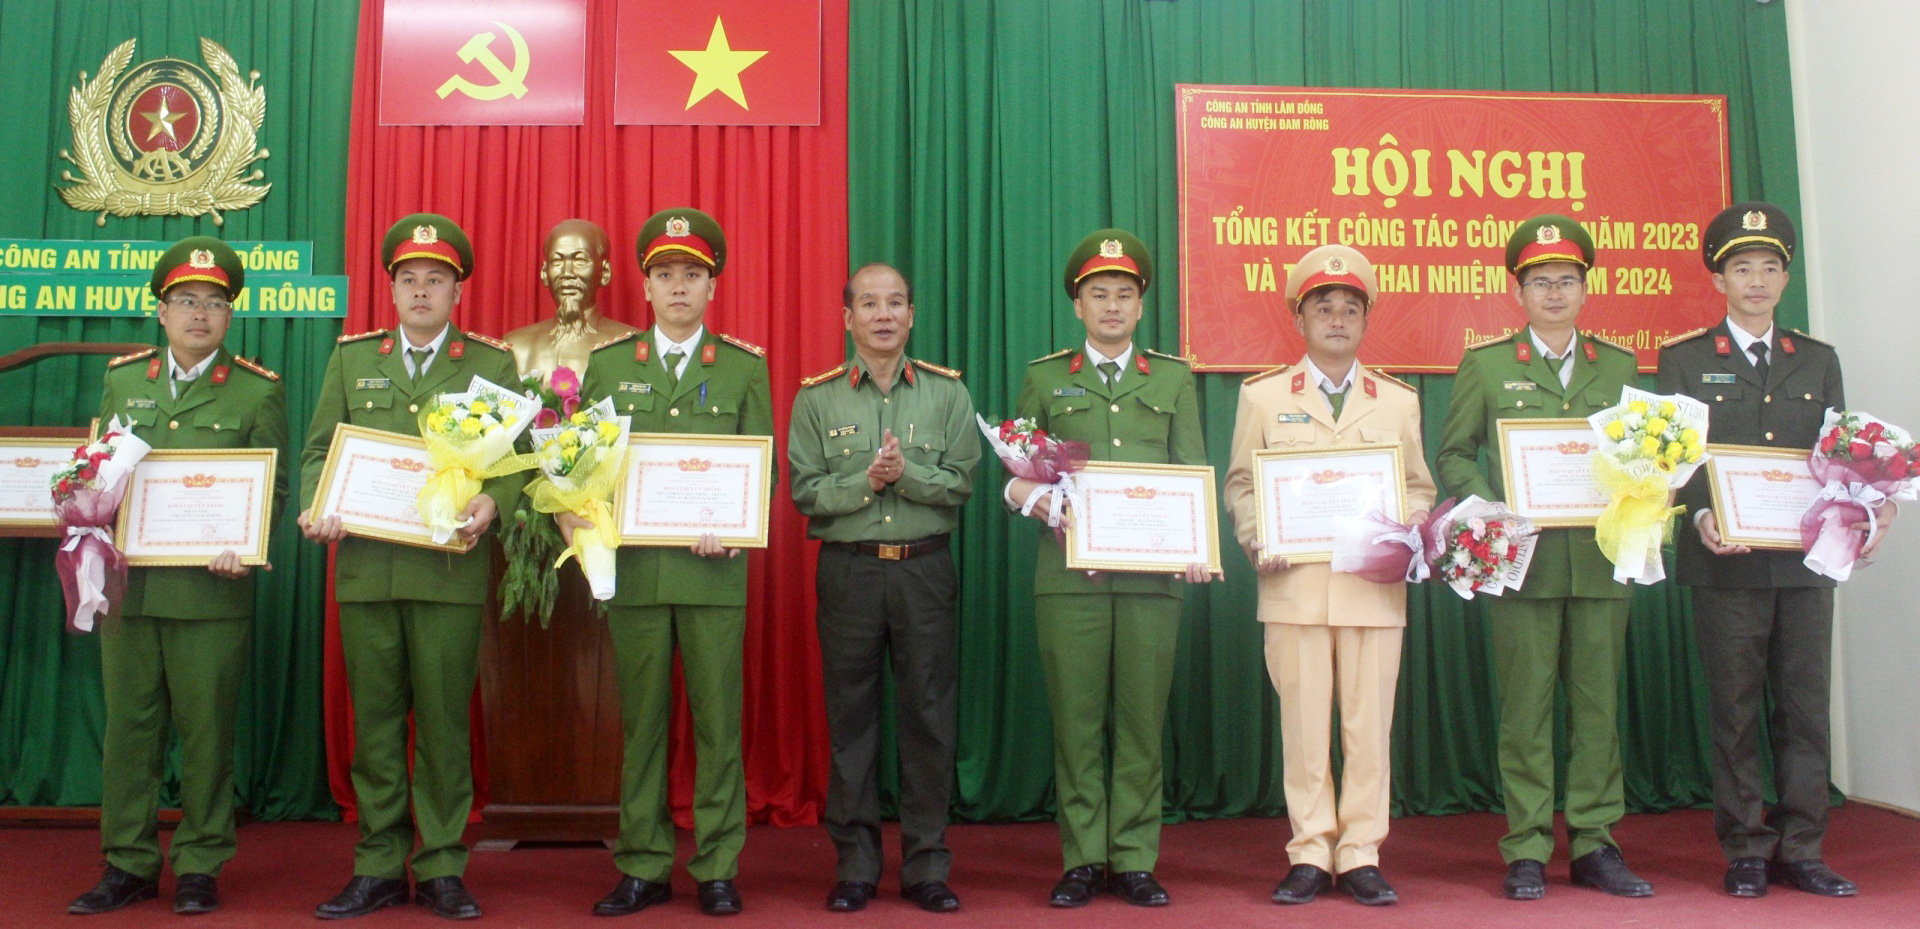 Đại tá Lê Hồng Phong - Phó Giám đốc Công an tỉnh trao giấy khen của Công an tỉnh cho các tập thể có thành tích xuất sắc trong thực hiện nhiệm vụ năm 2023